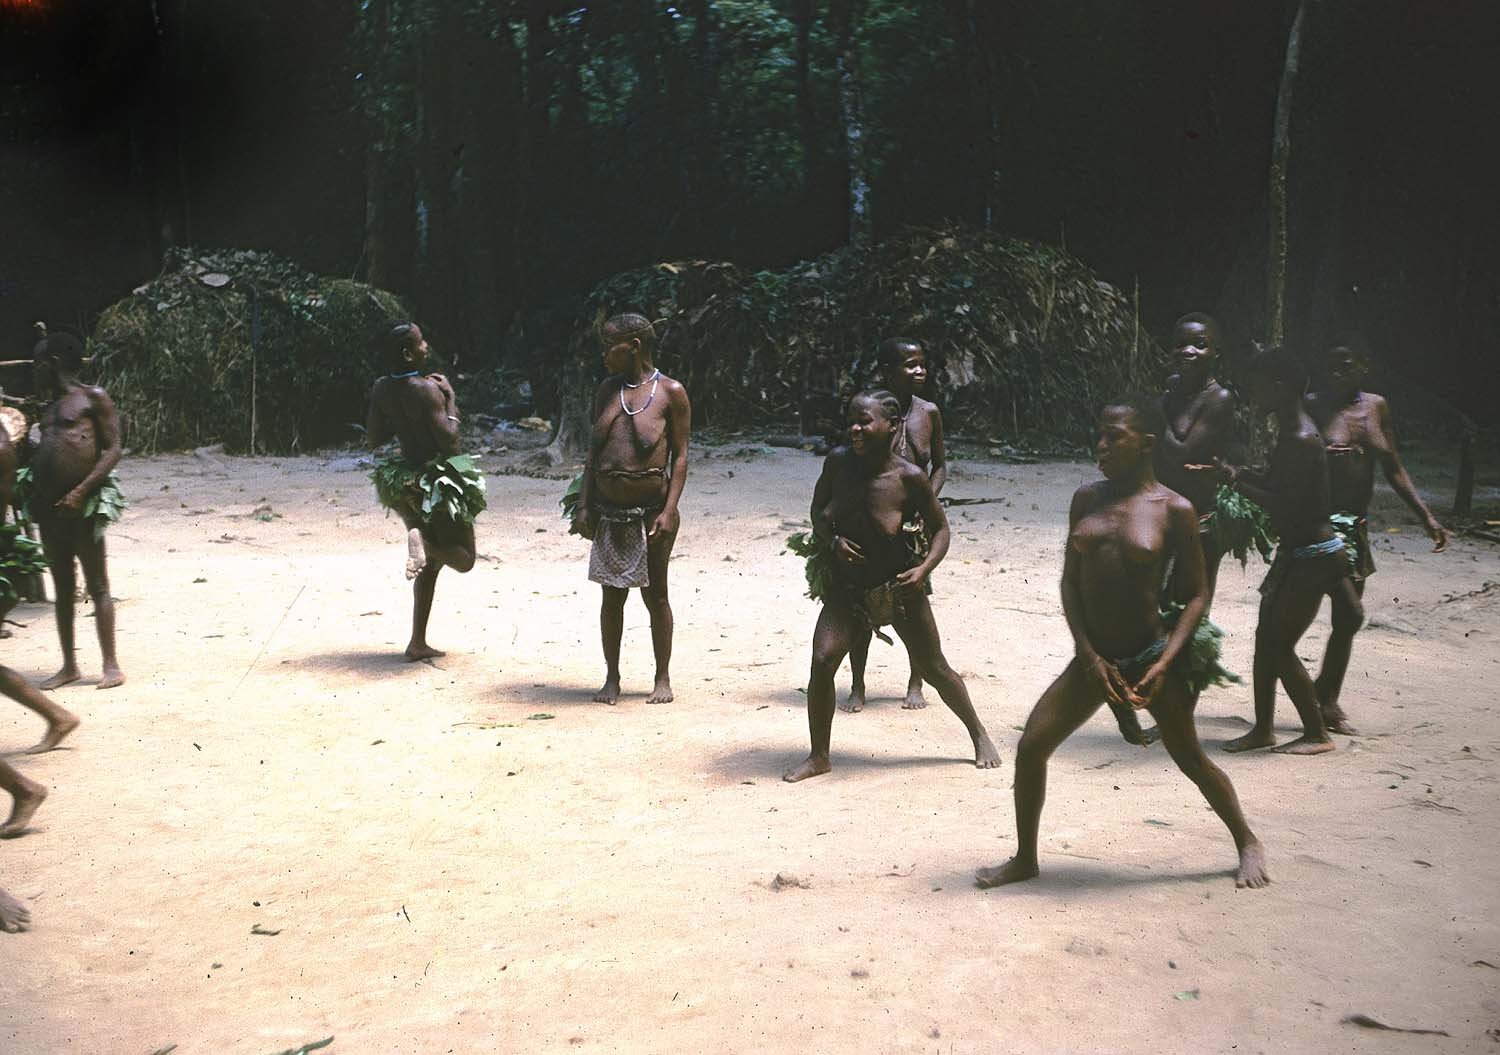 Metz 10 - 1959 - Pygmie girls dancing - Metz81 - 8 M.jpg